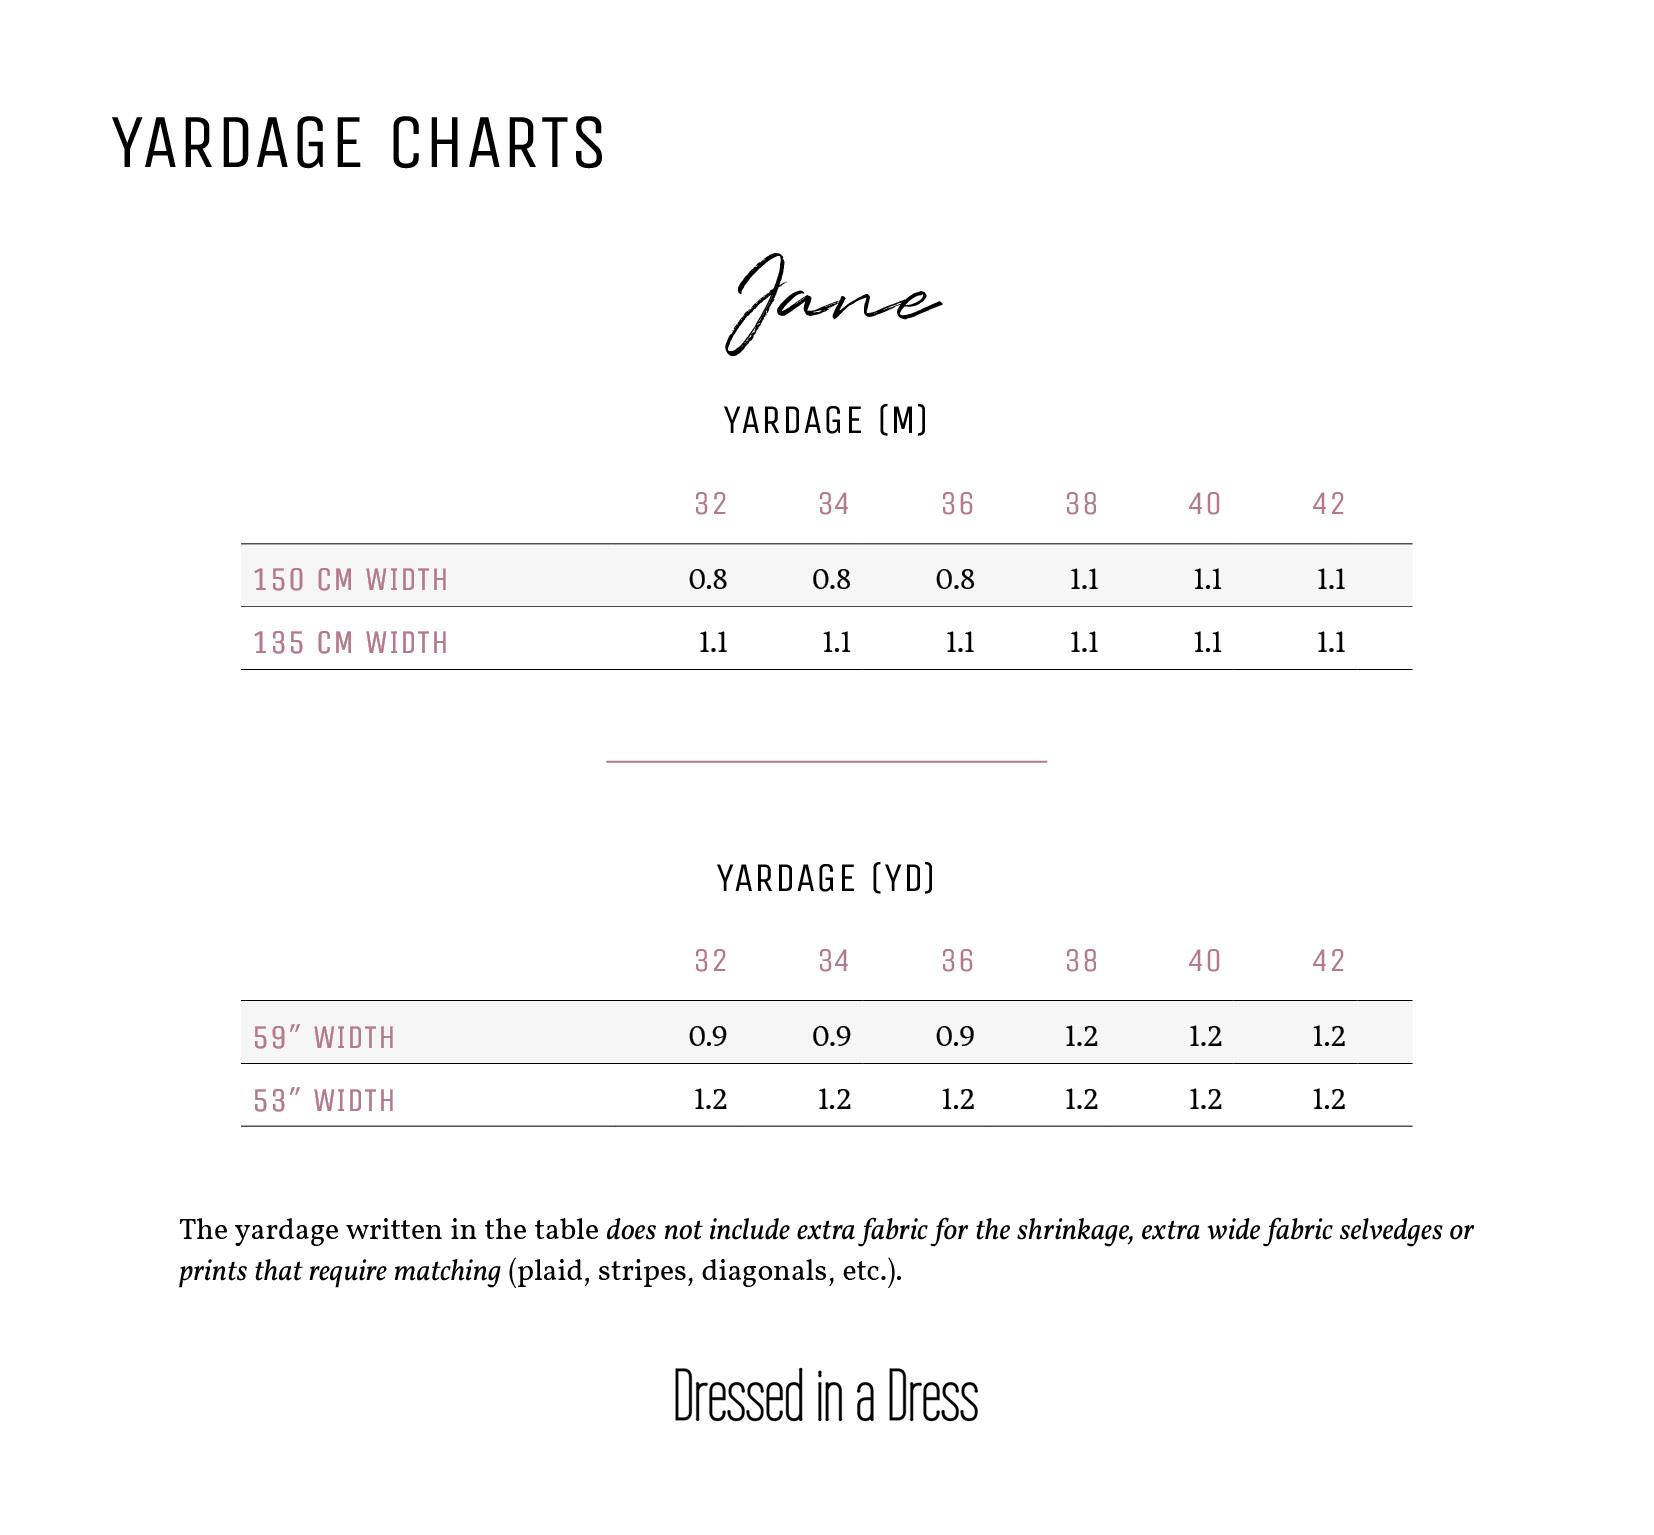 Jane Yardage Charts